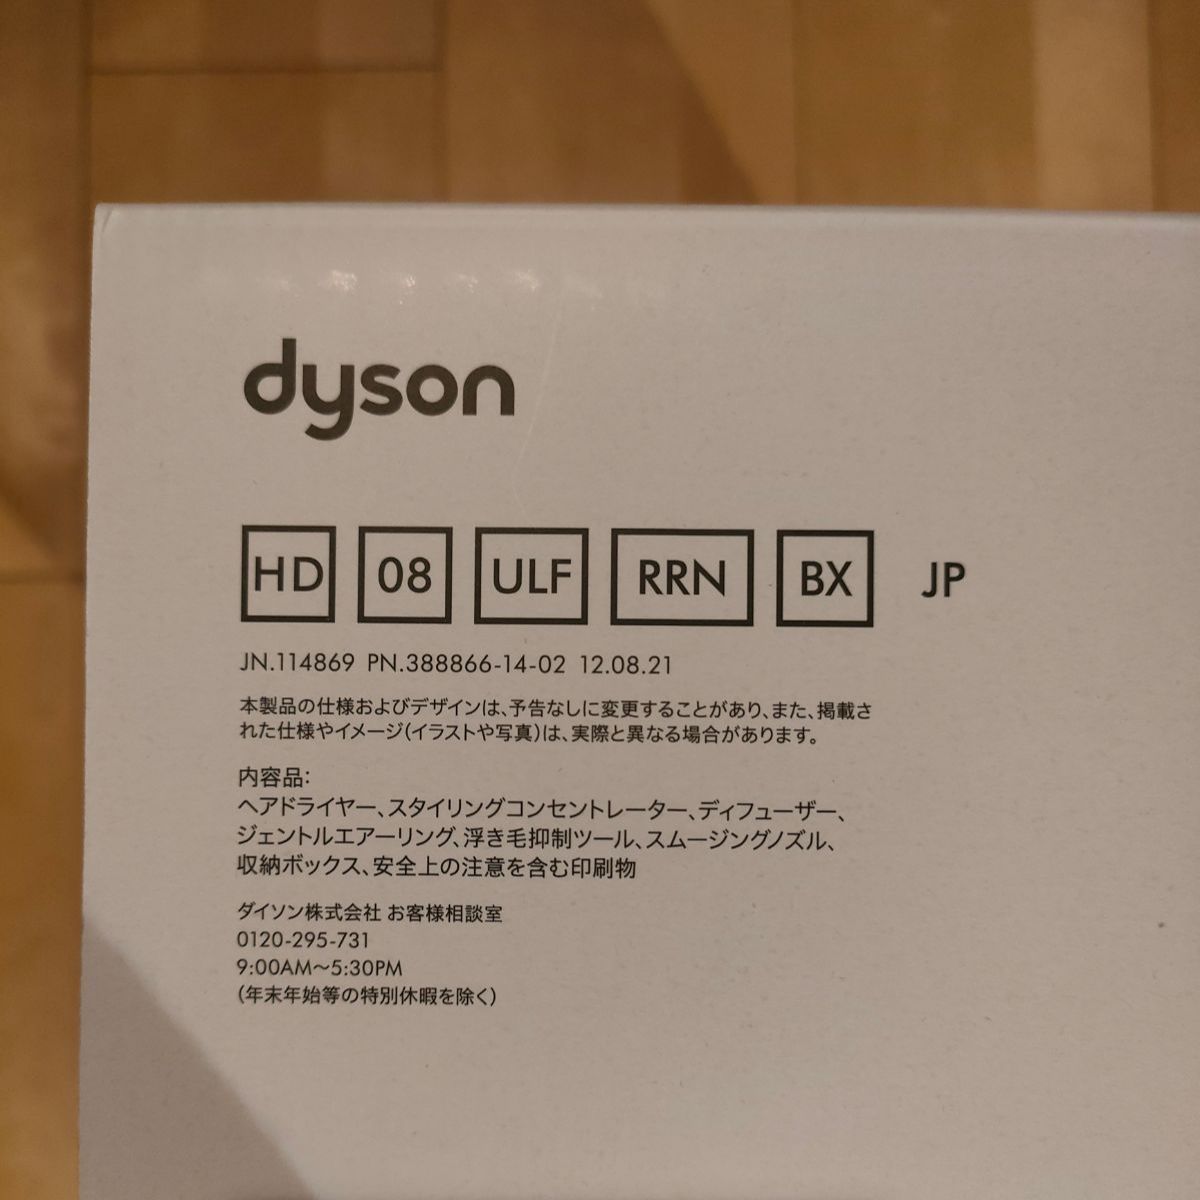 希少!大人気! 美容/健康 【新品未使用】dyson ヘアドライヤー HD08